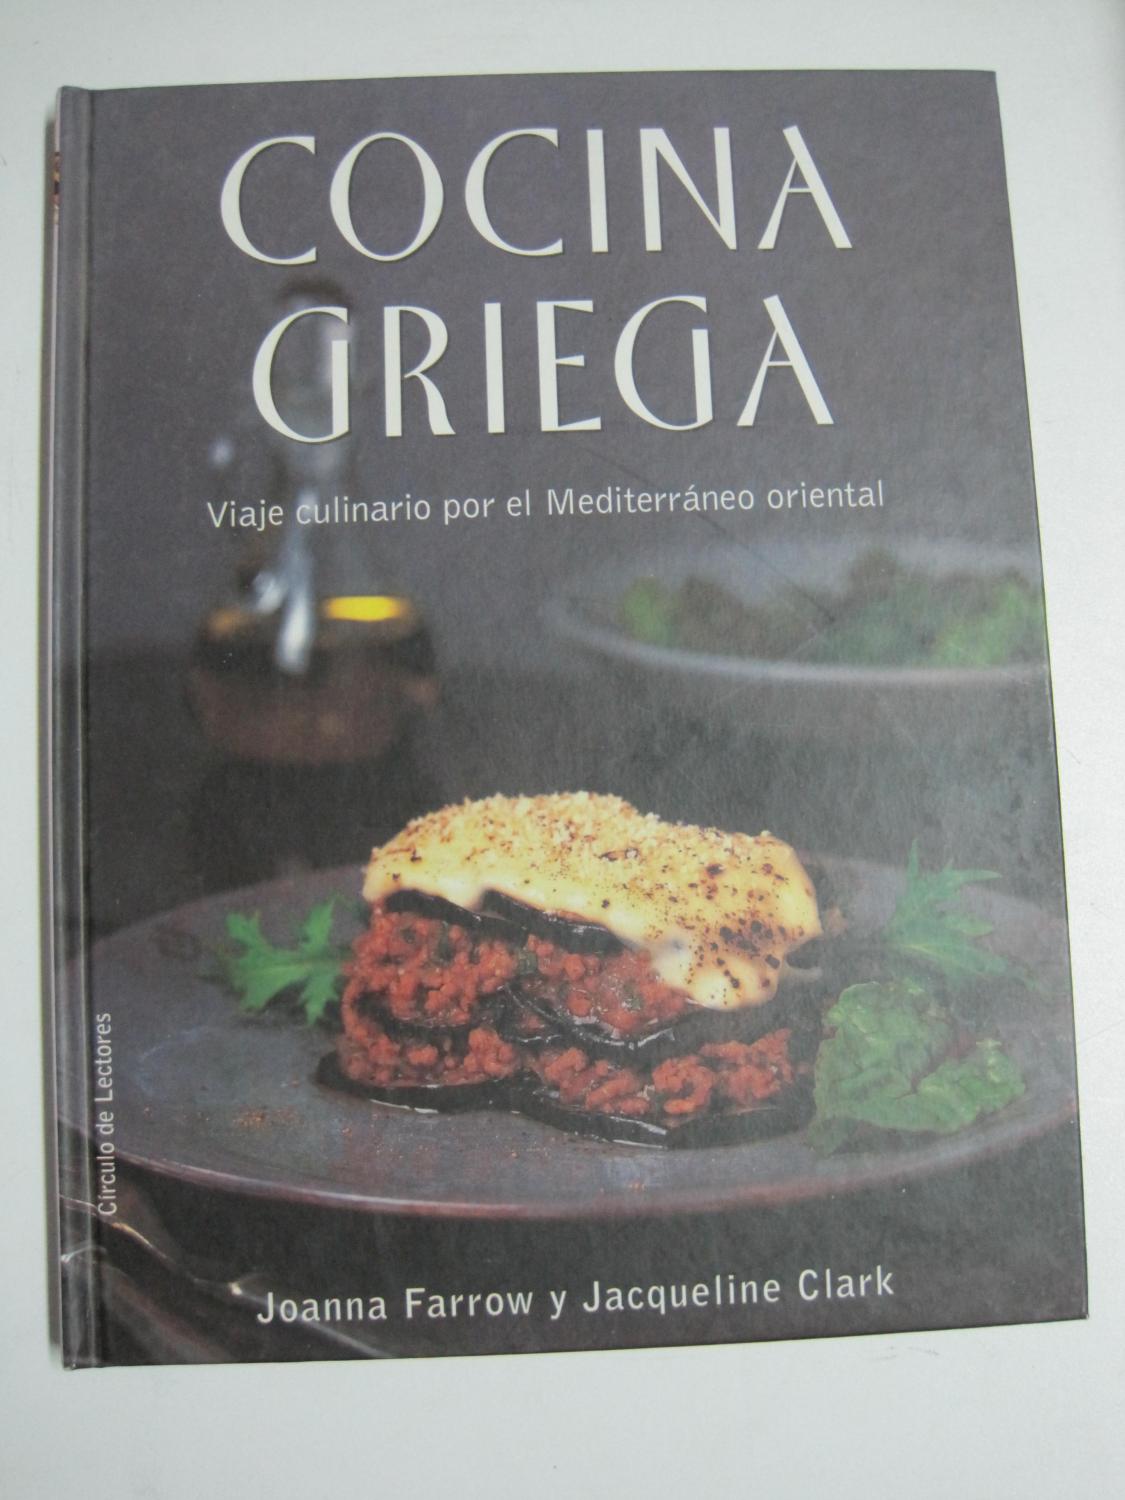 Cocina griega, viaje culinario por el mediterráneo oriental - Joanna Farrow y Jacqueline Clark